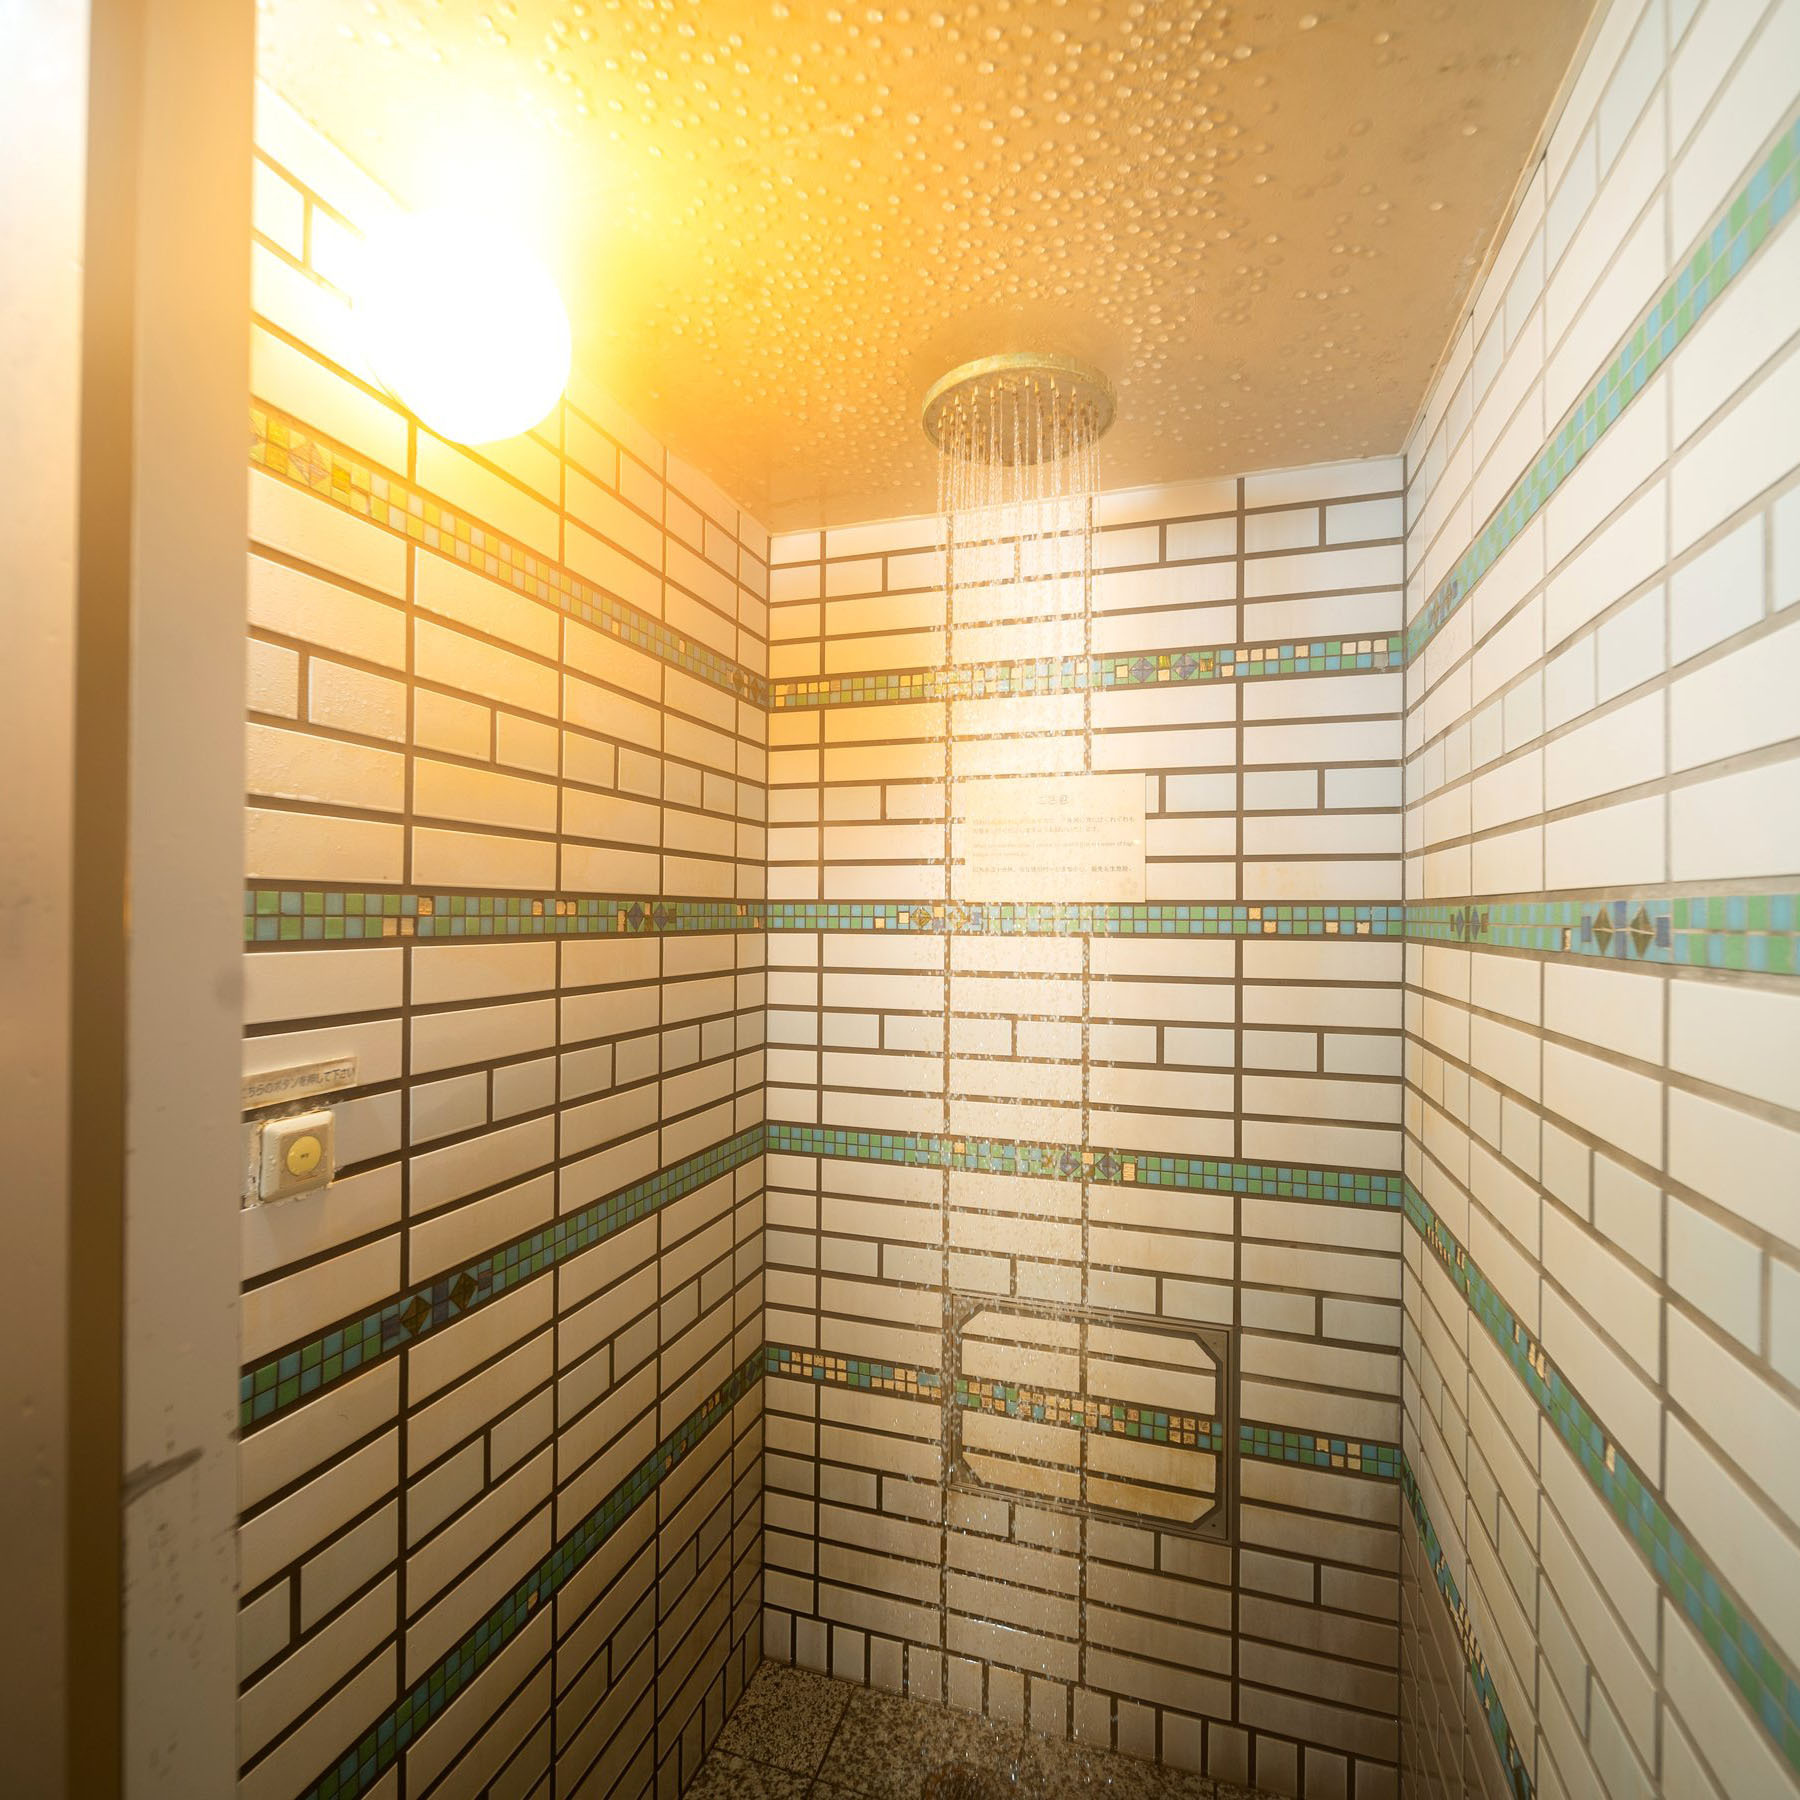 【シャワー:大浴場】広々としたスペースでお身体をお流し下さい。